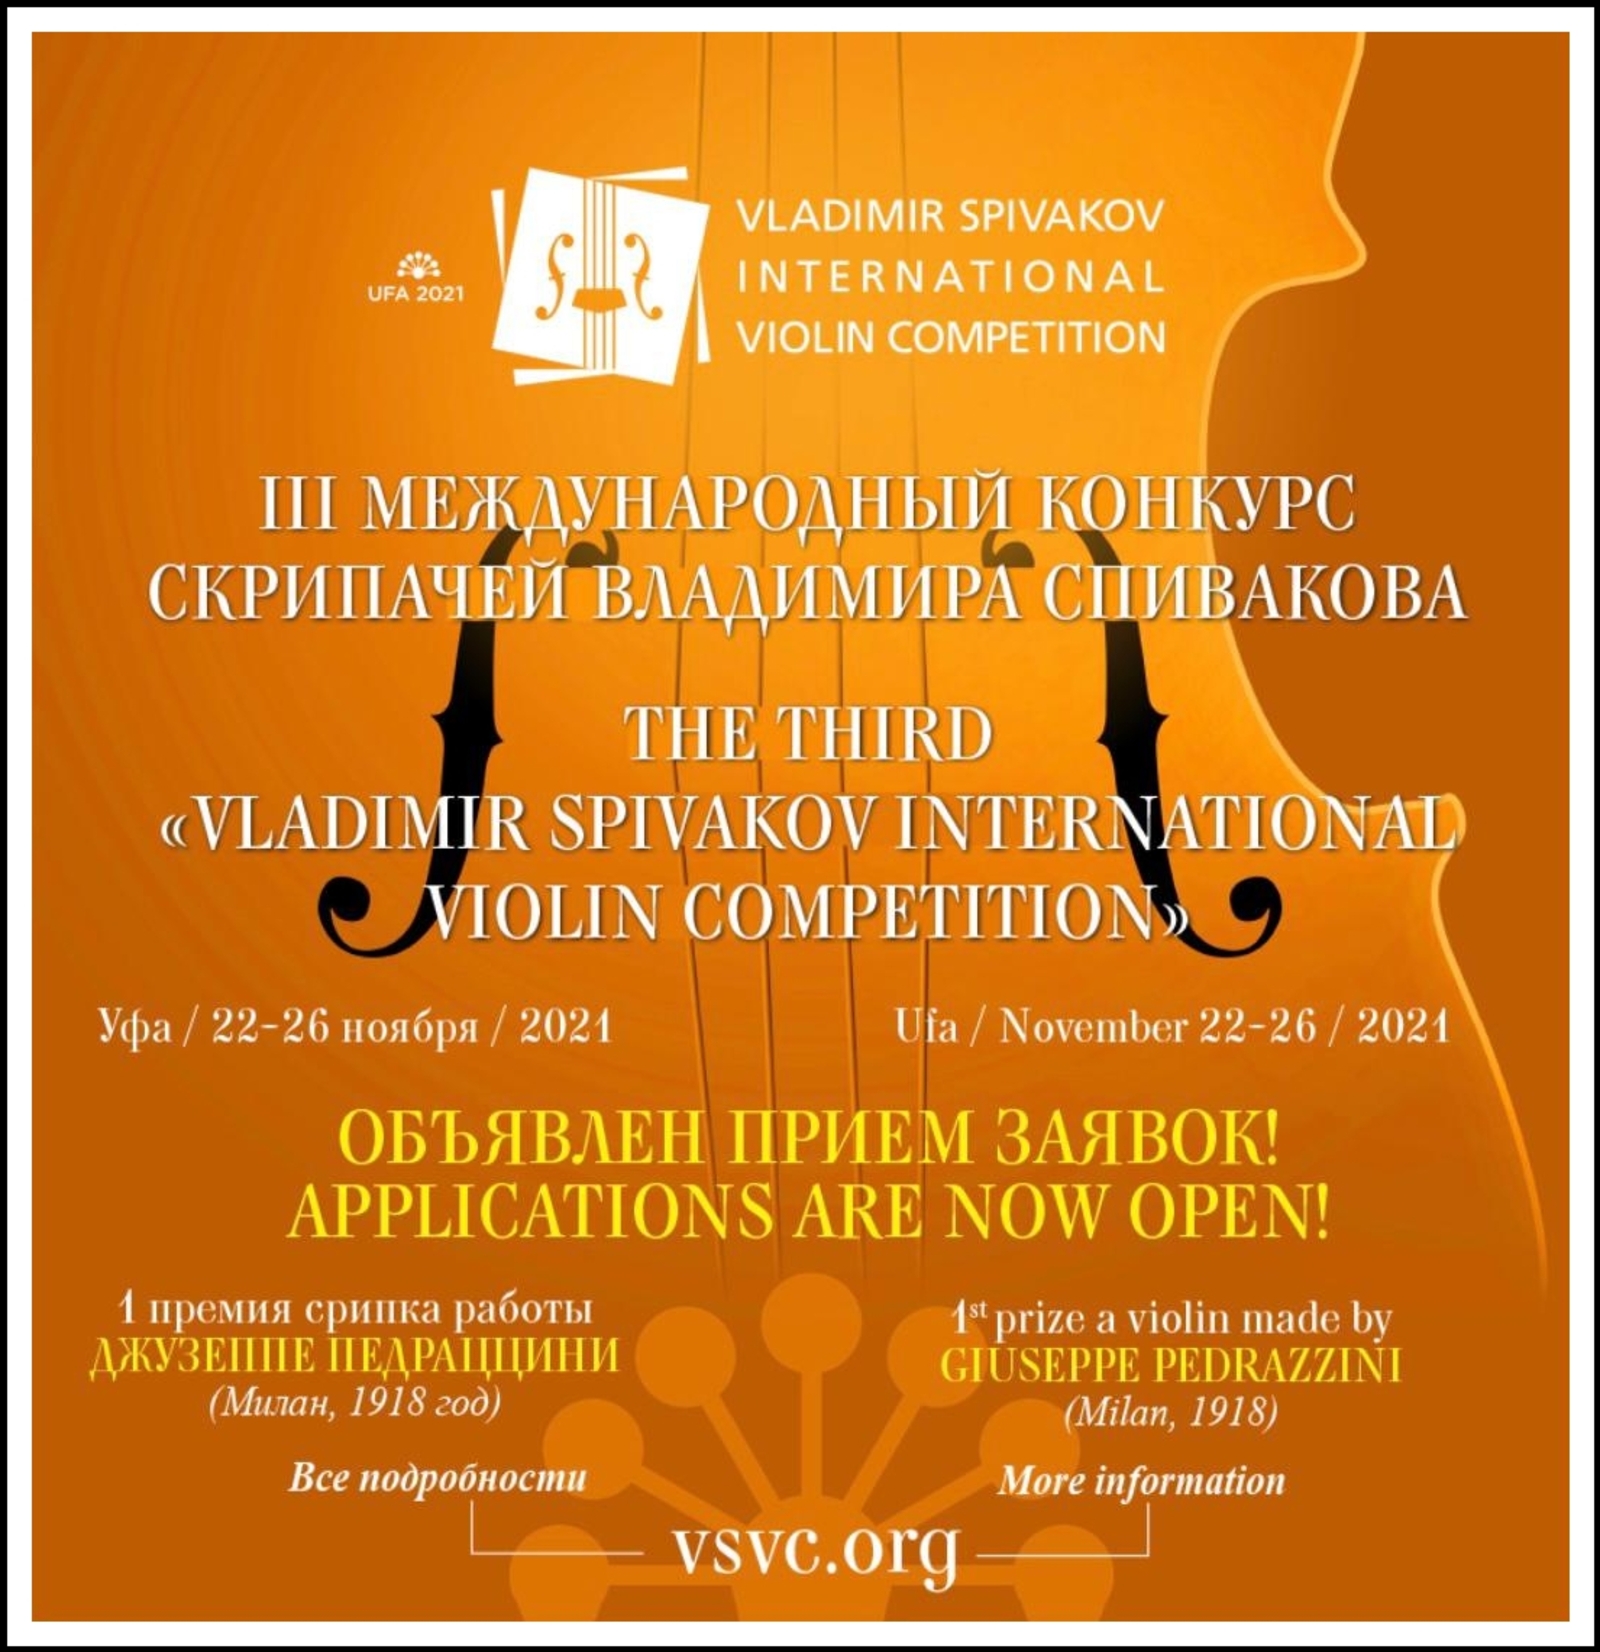 III Международный конкурс скрипачей Владимира Спивакова состоится в Уфе в этом году